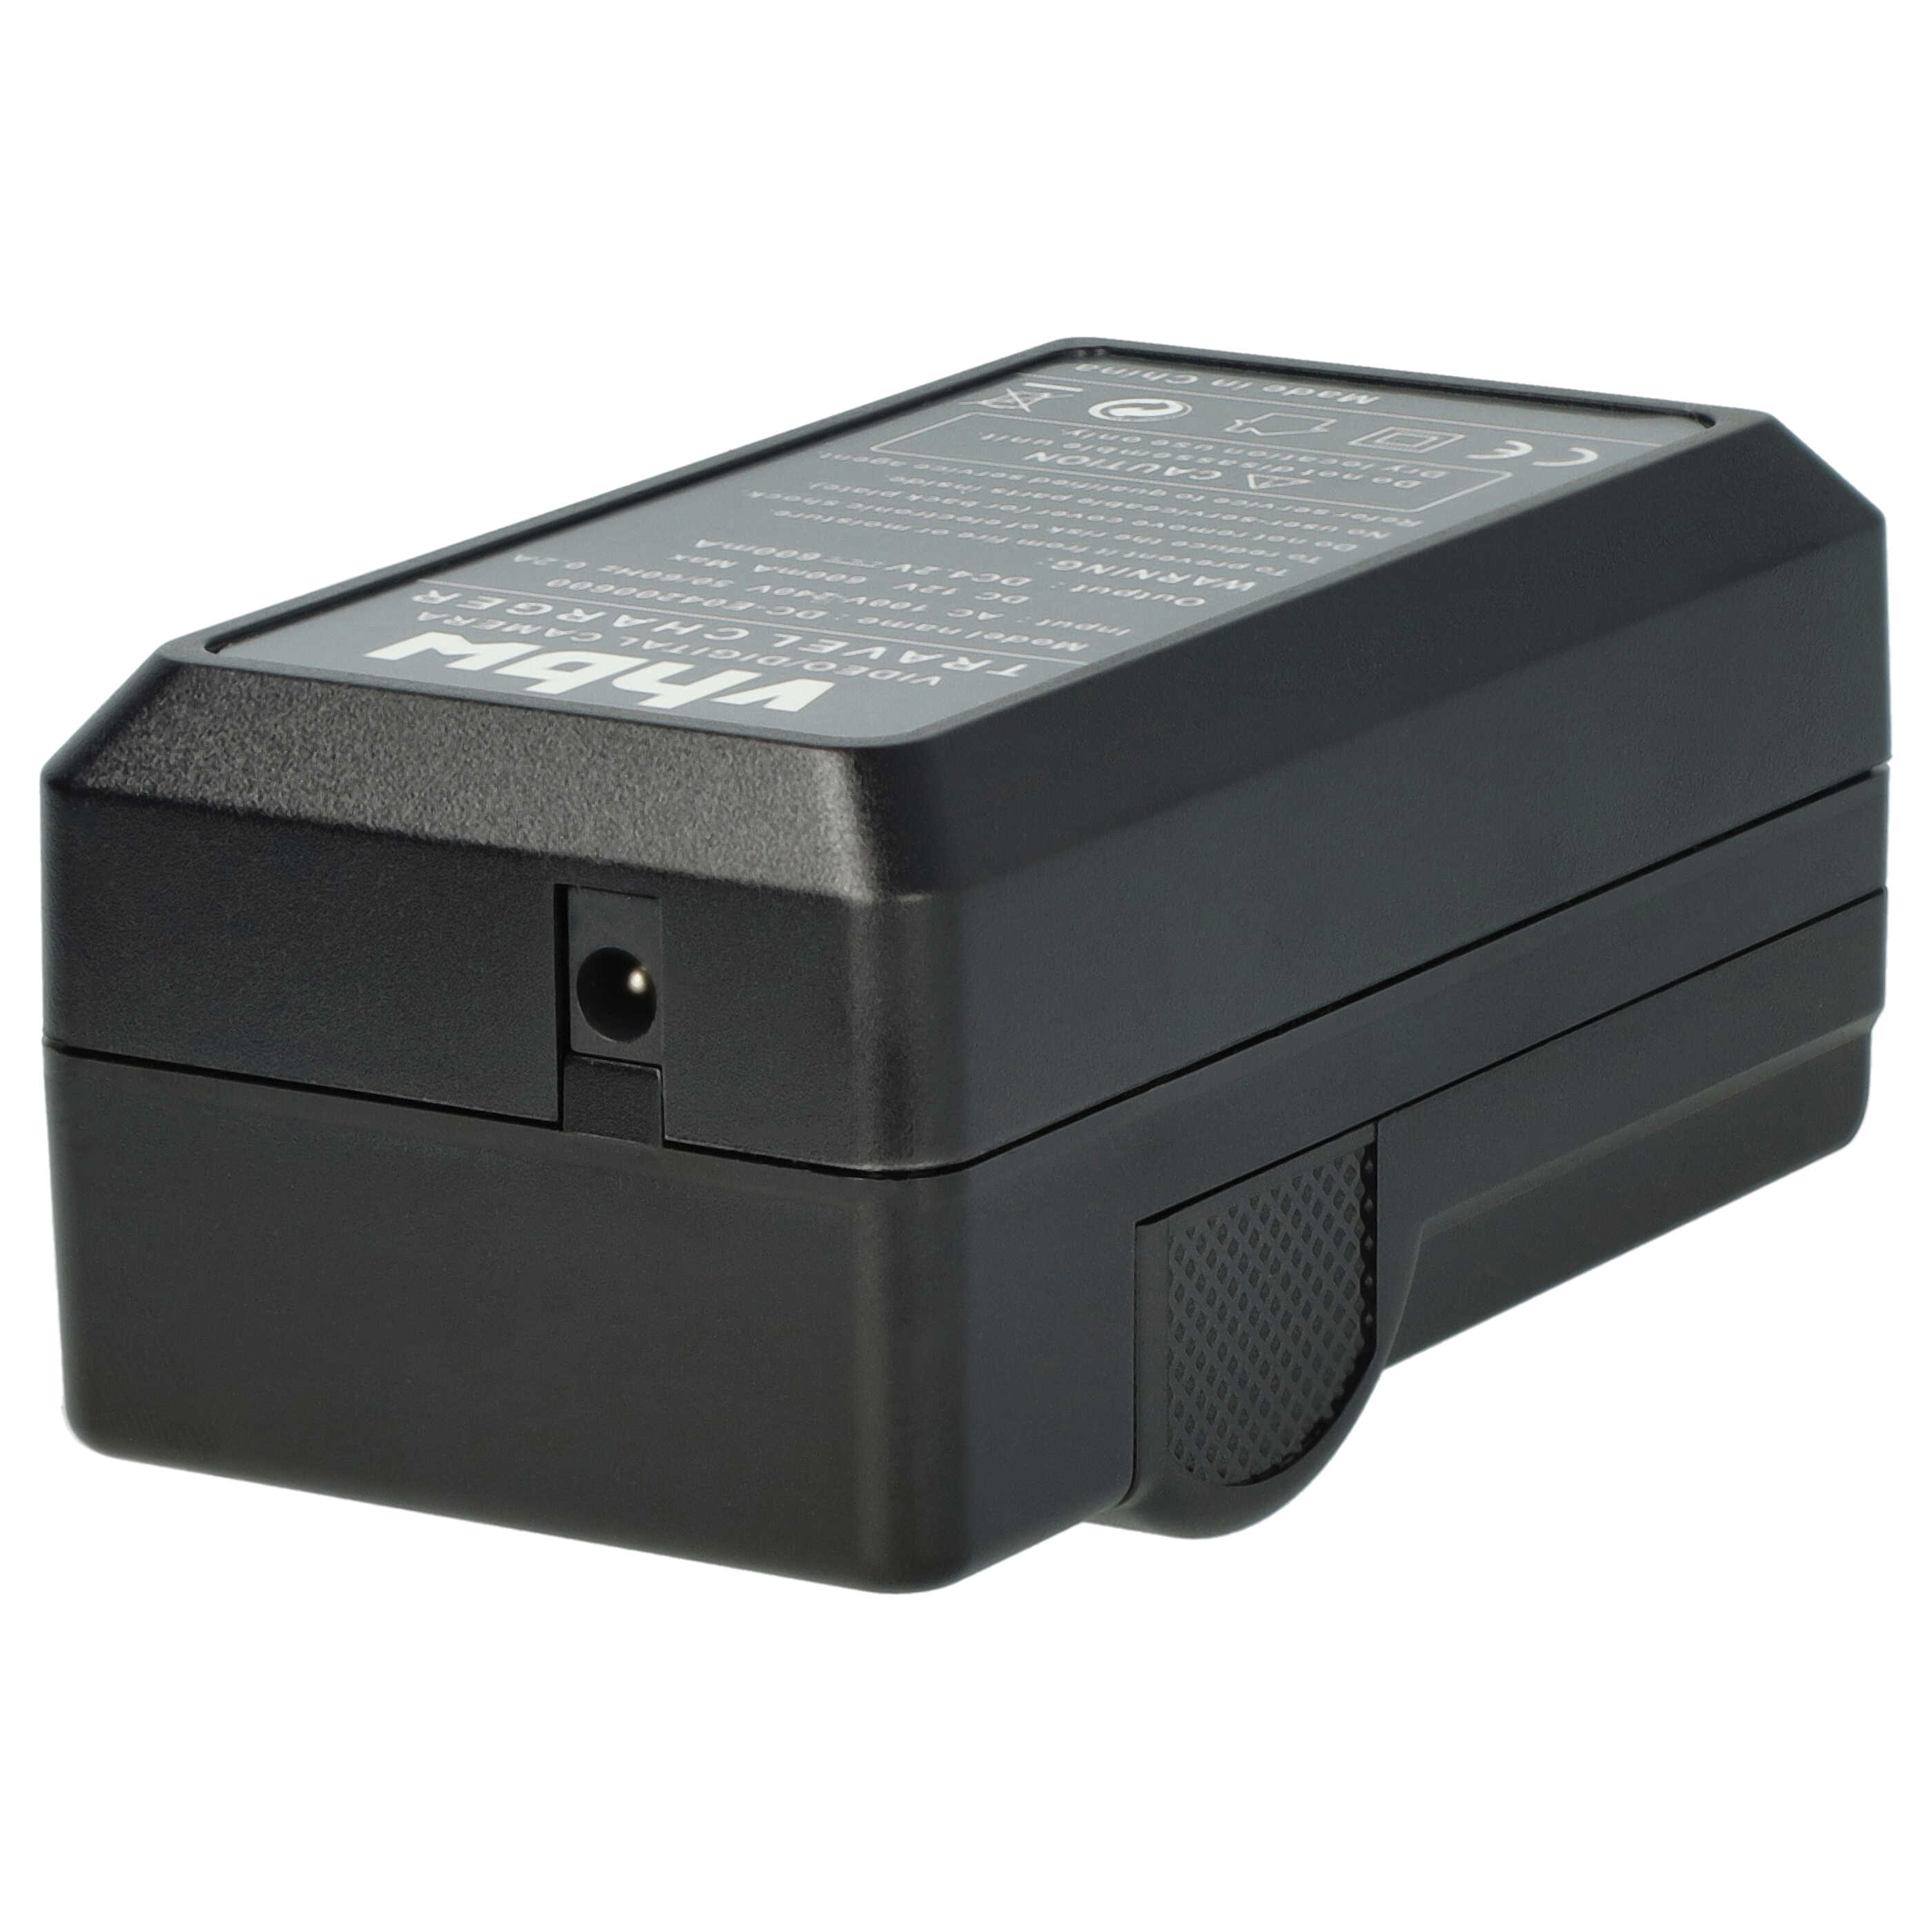 Akku Ladegerät passend für Fujifilm Digitalkamera und weitere - 0,6 A, 4,2 V